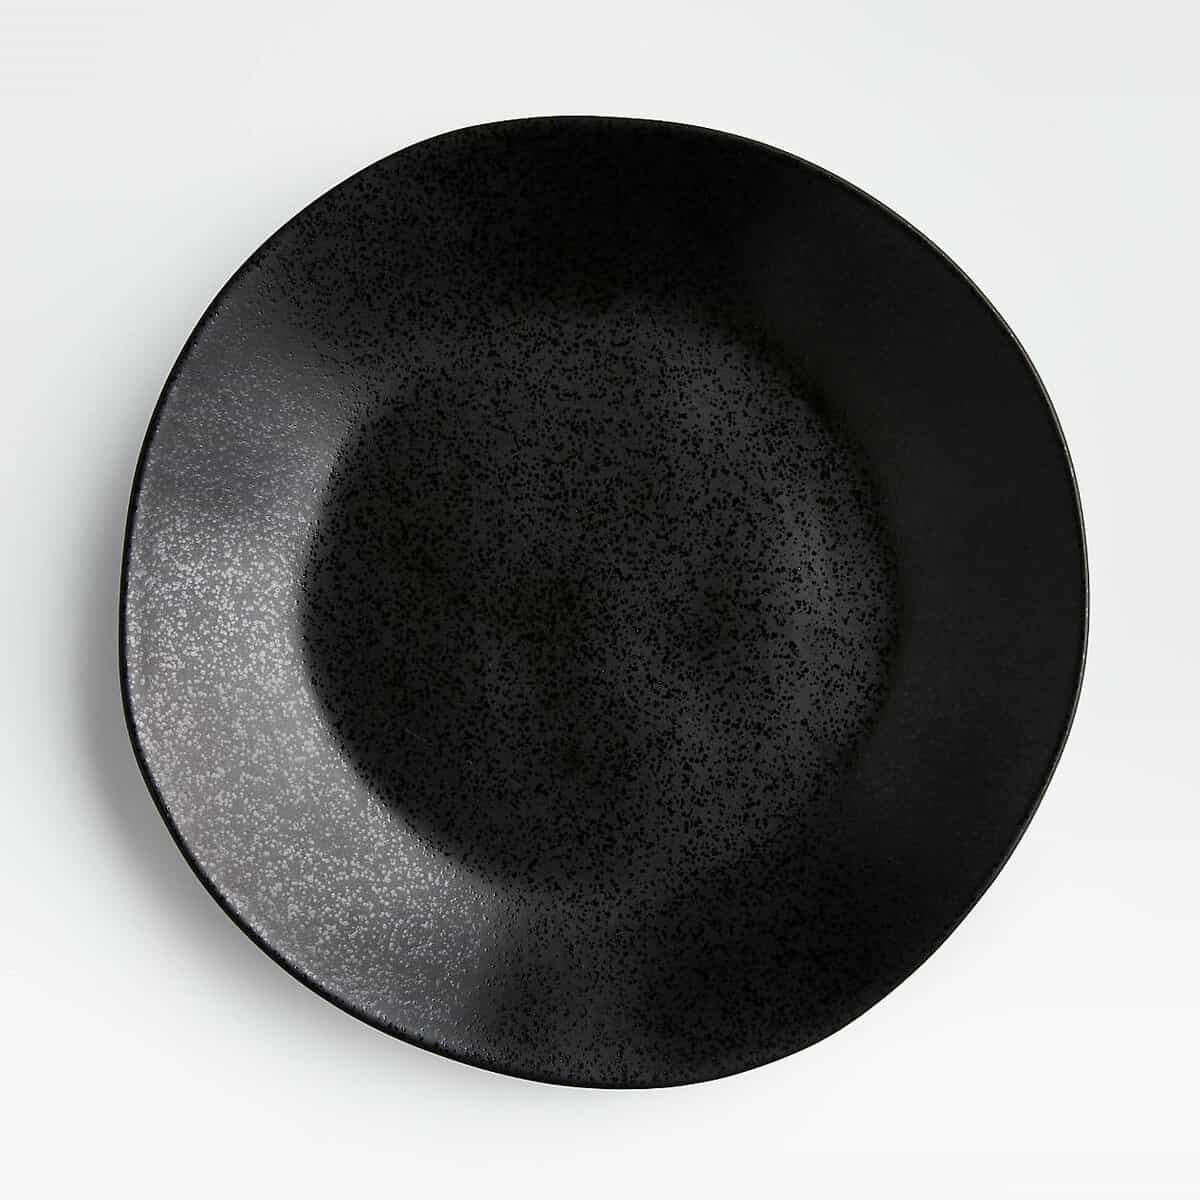 Black Dinner Plate